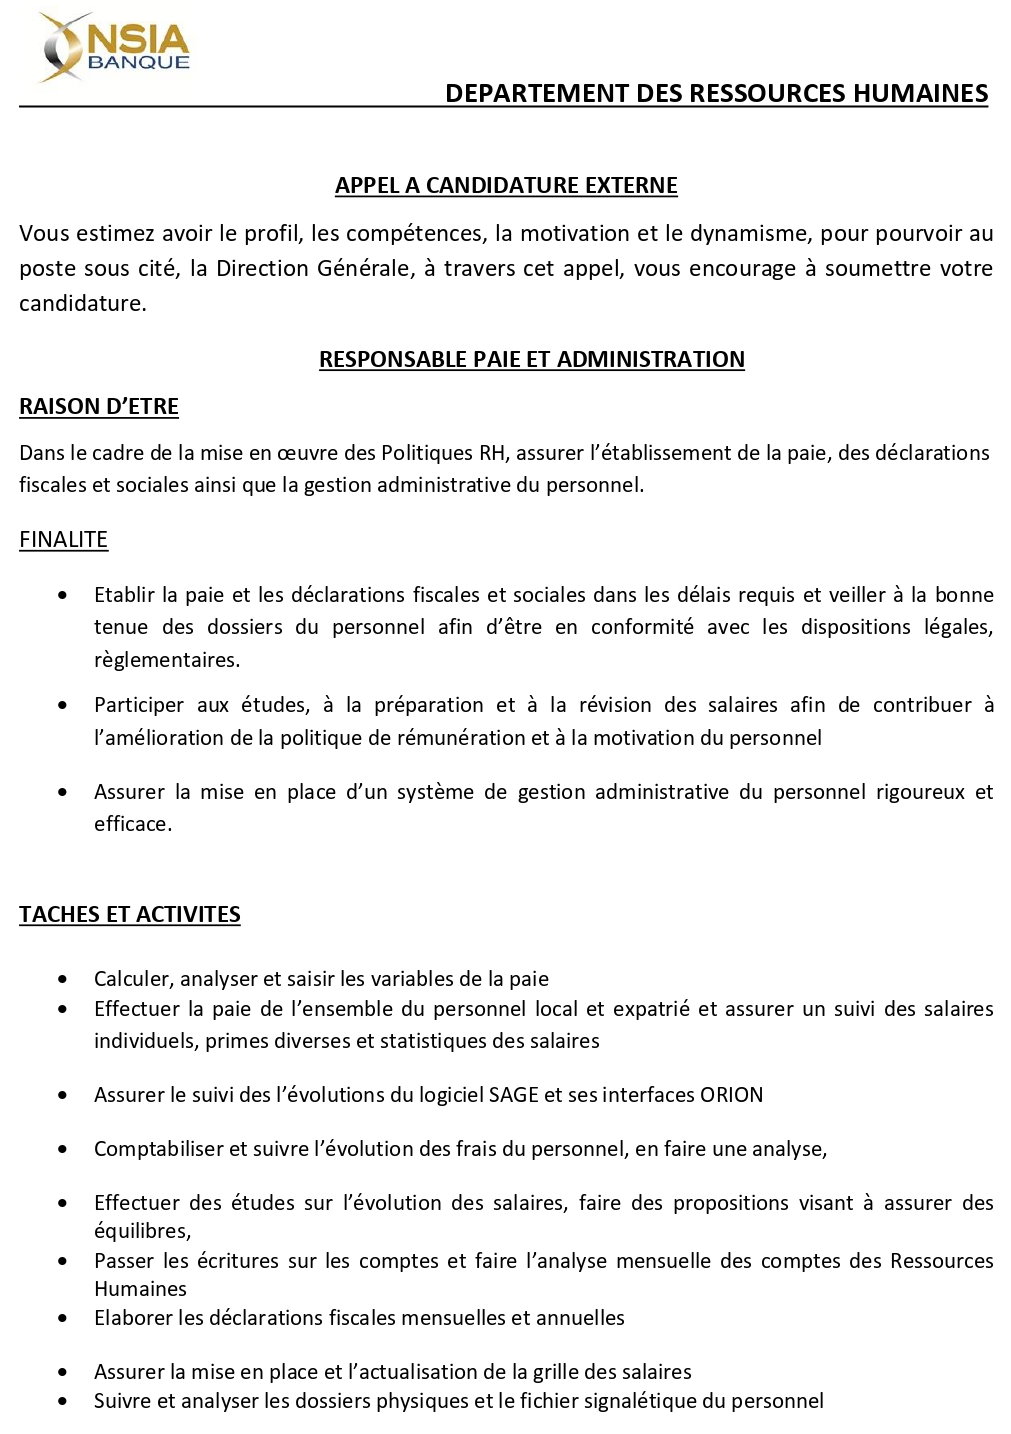 AVIS DE RECRUTEMENT D'UN RESPONSABLE PAIE ET ADMINISTRATION | Page 1